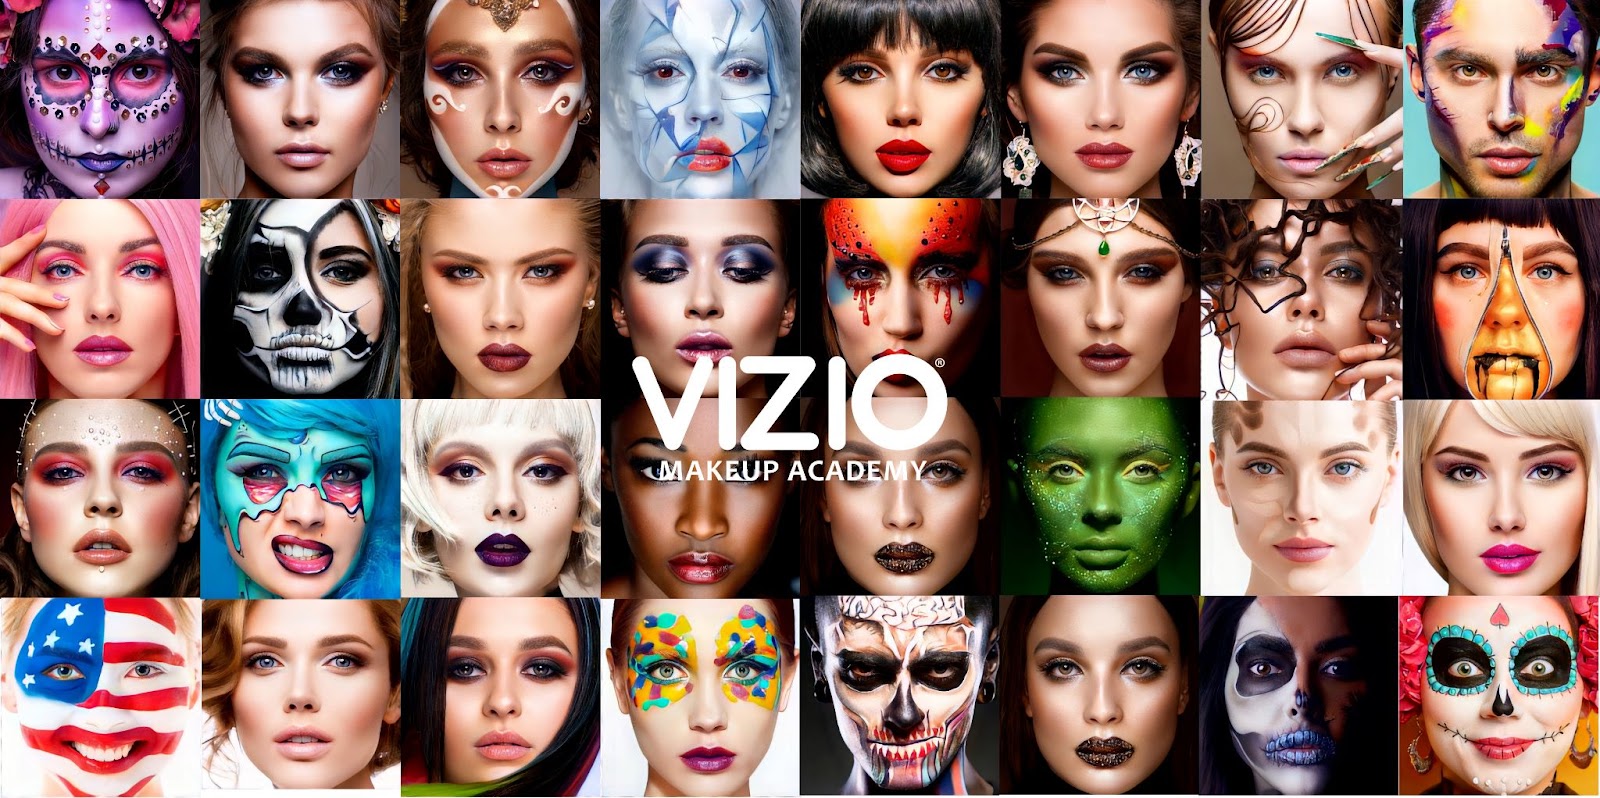 vizio-makeup-academy-9bbc8636-3fdf-490d-84f9-c3e17cab0e1d